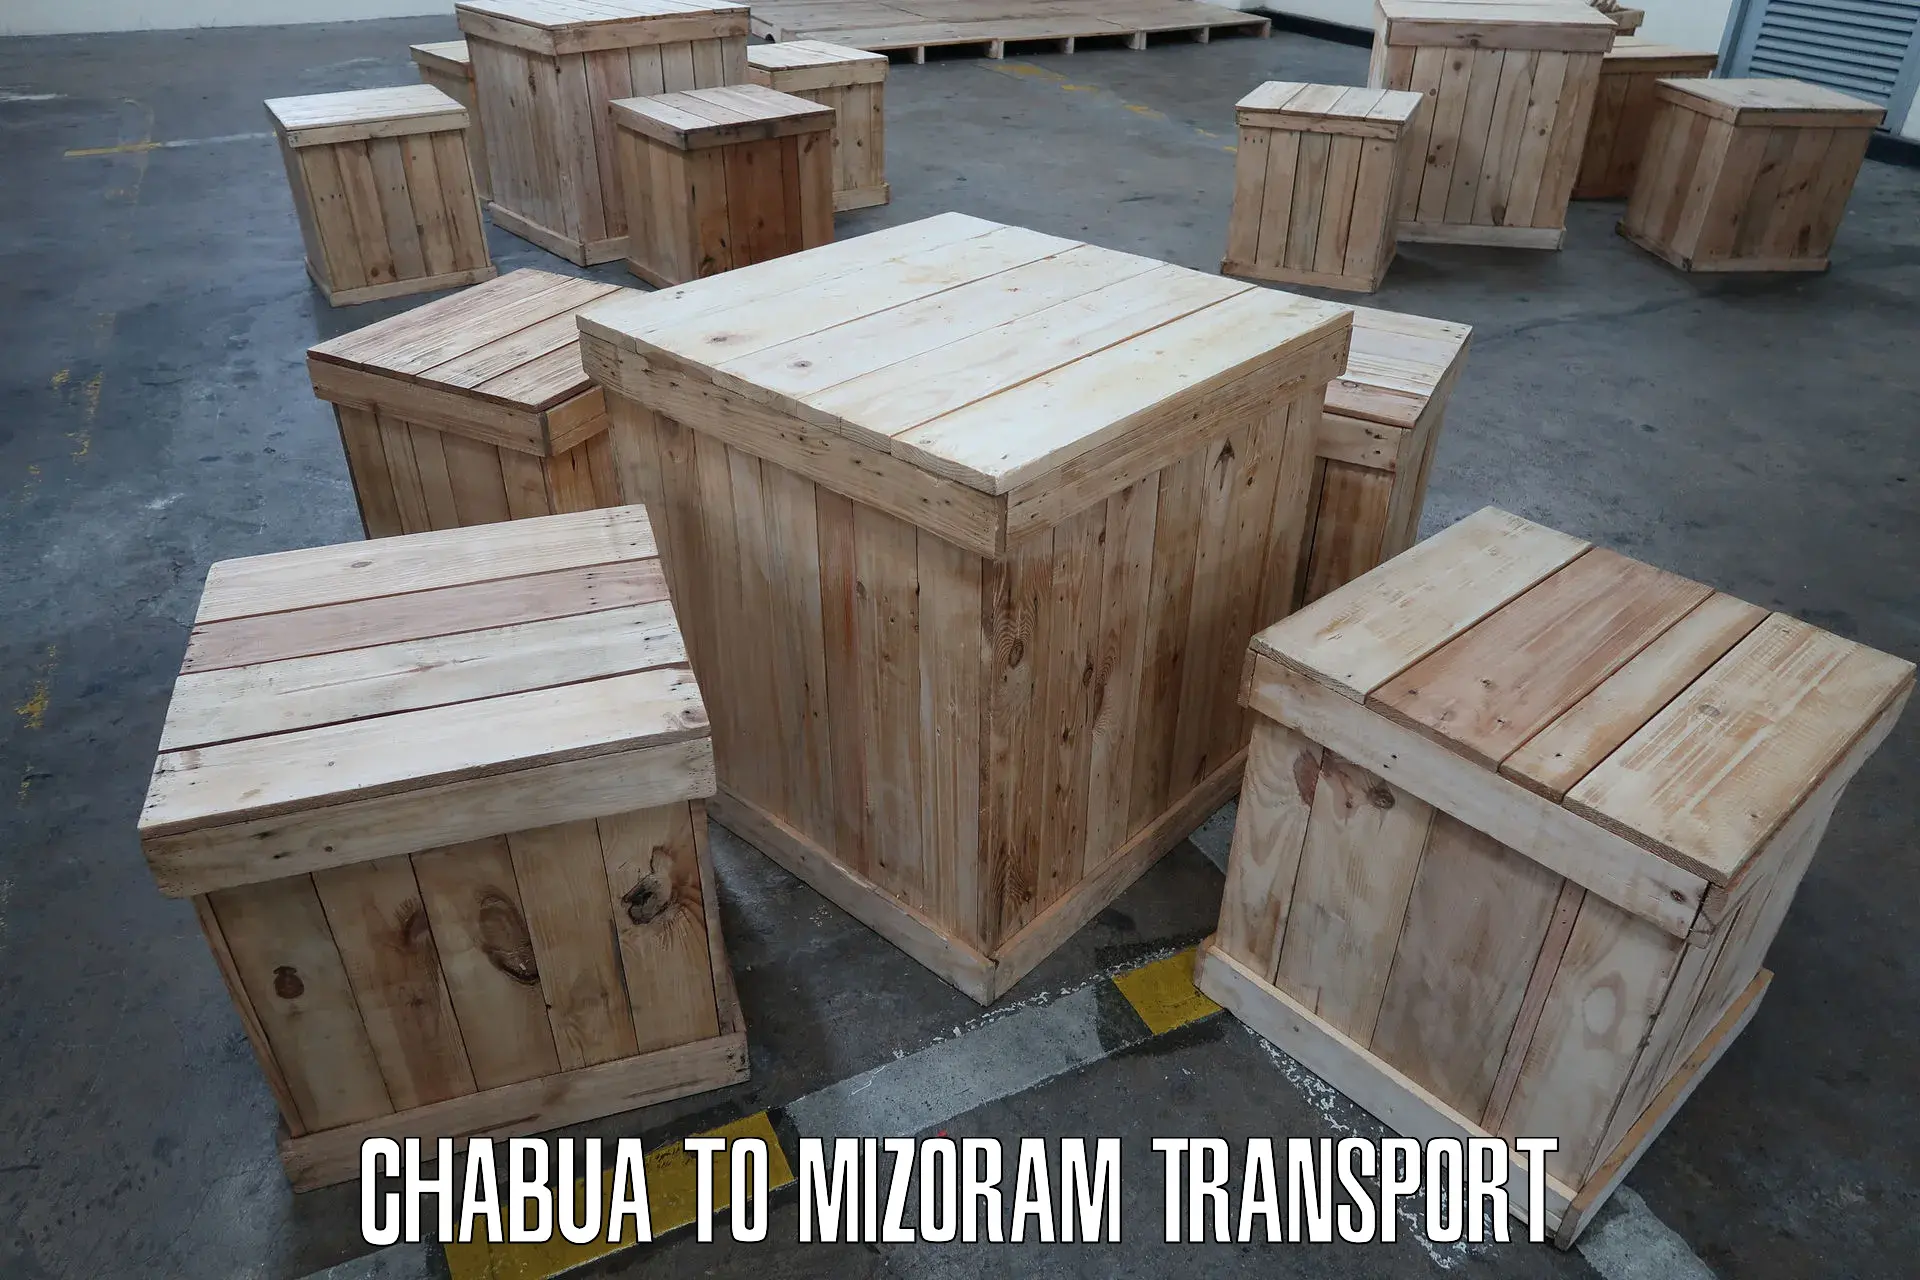 Nearby transport service Chabua to Mizoram